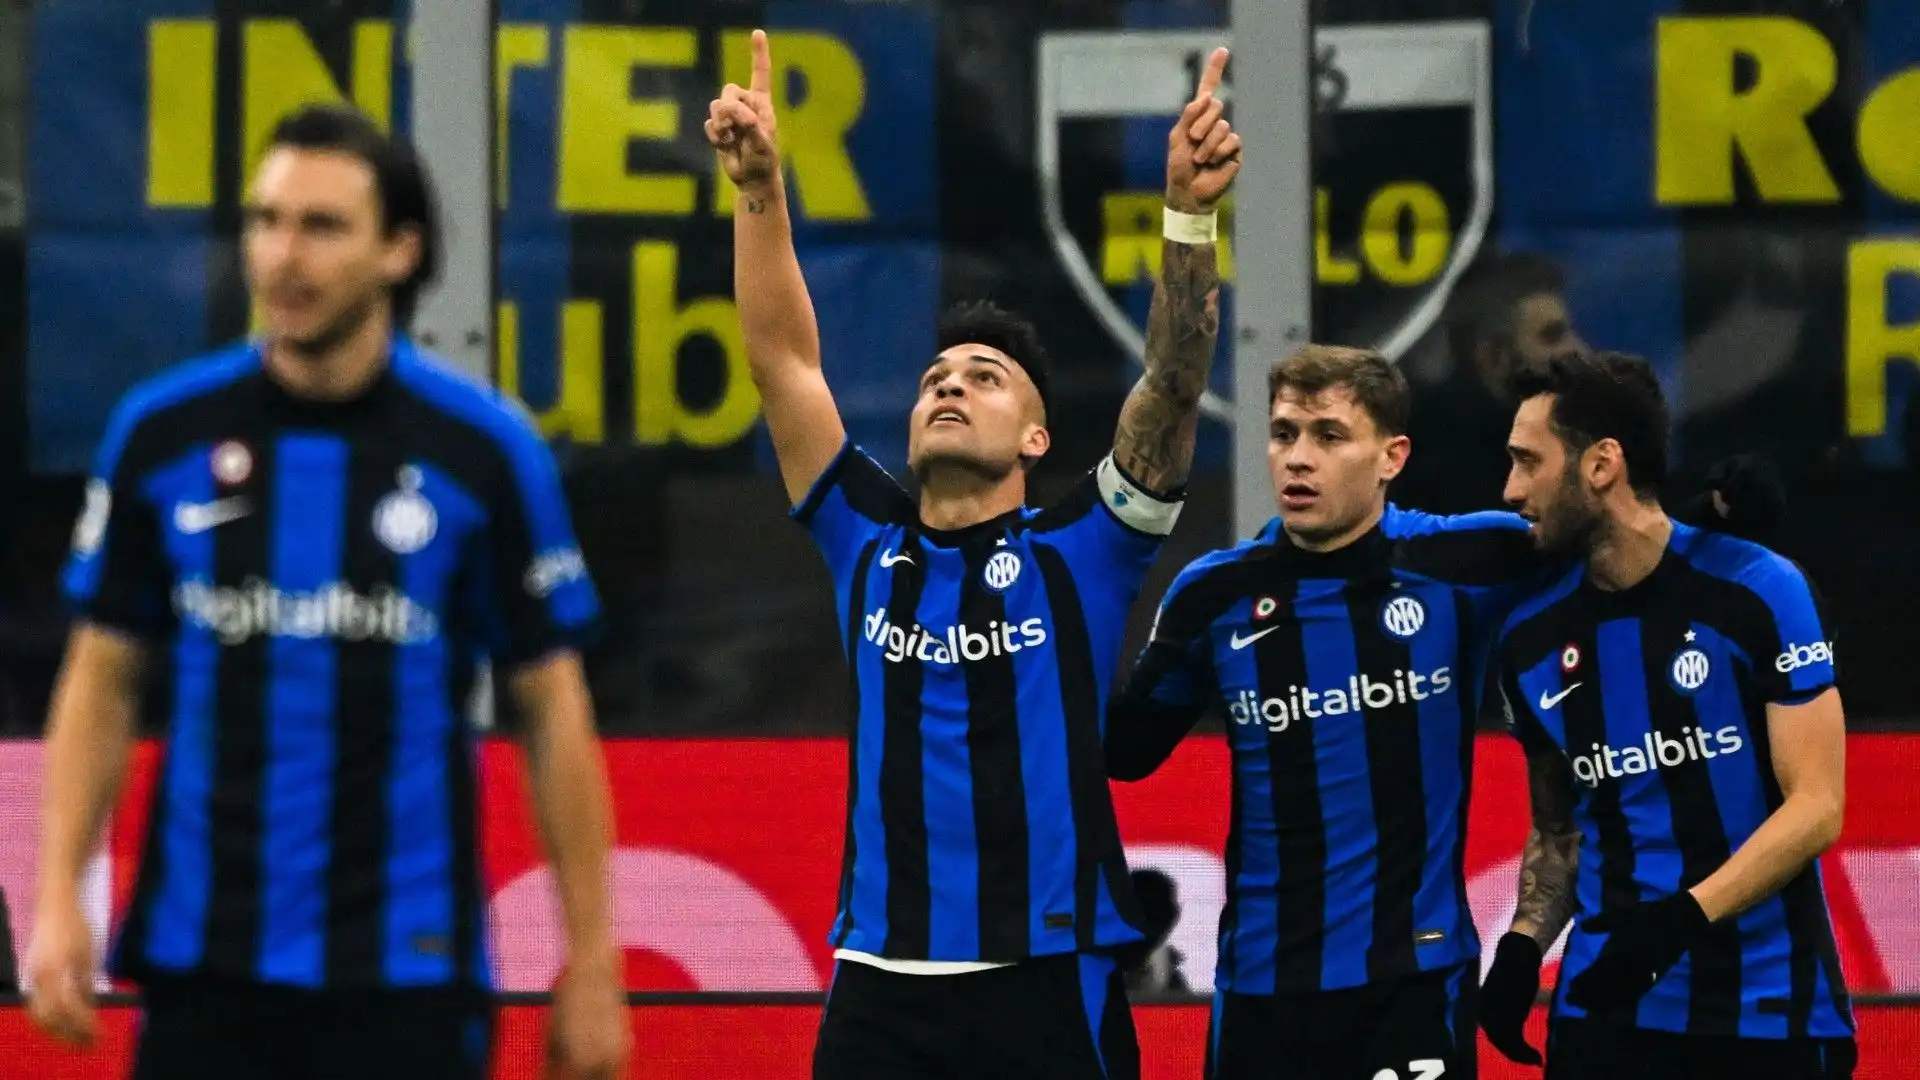 L'Inter h vinto 1-0 grazie al gol di Lautaro Martinez